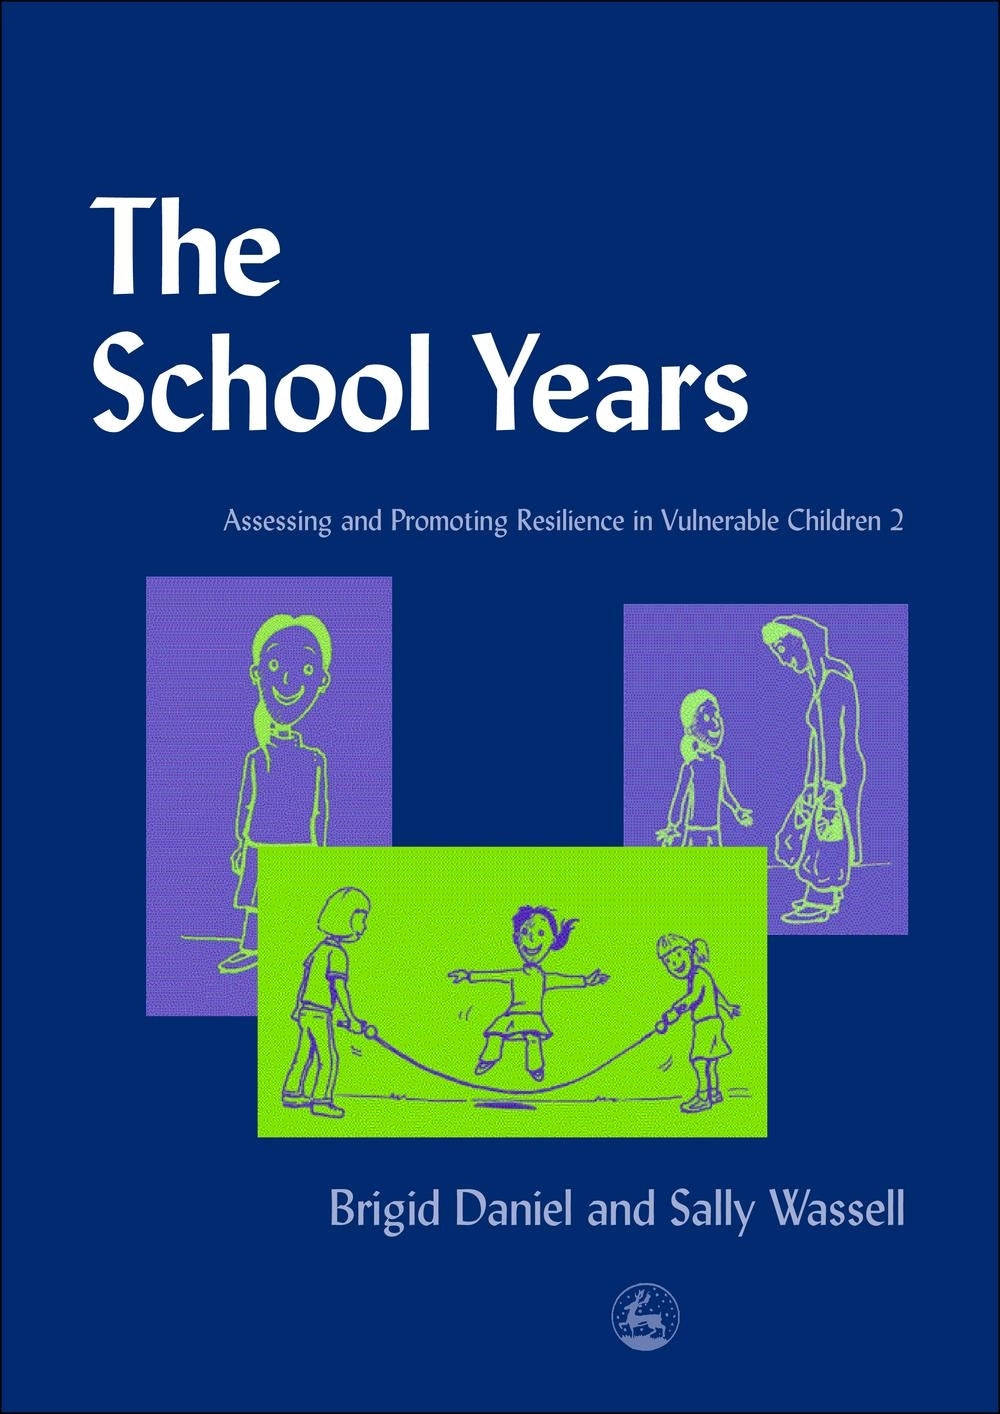 The School Years by Brigid Daniel, Sally Wassell